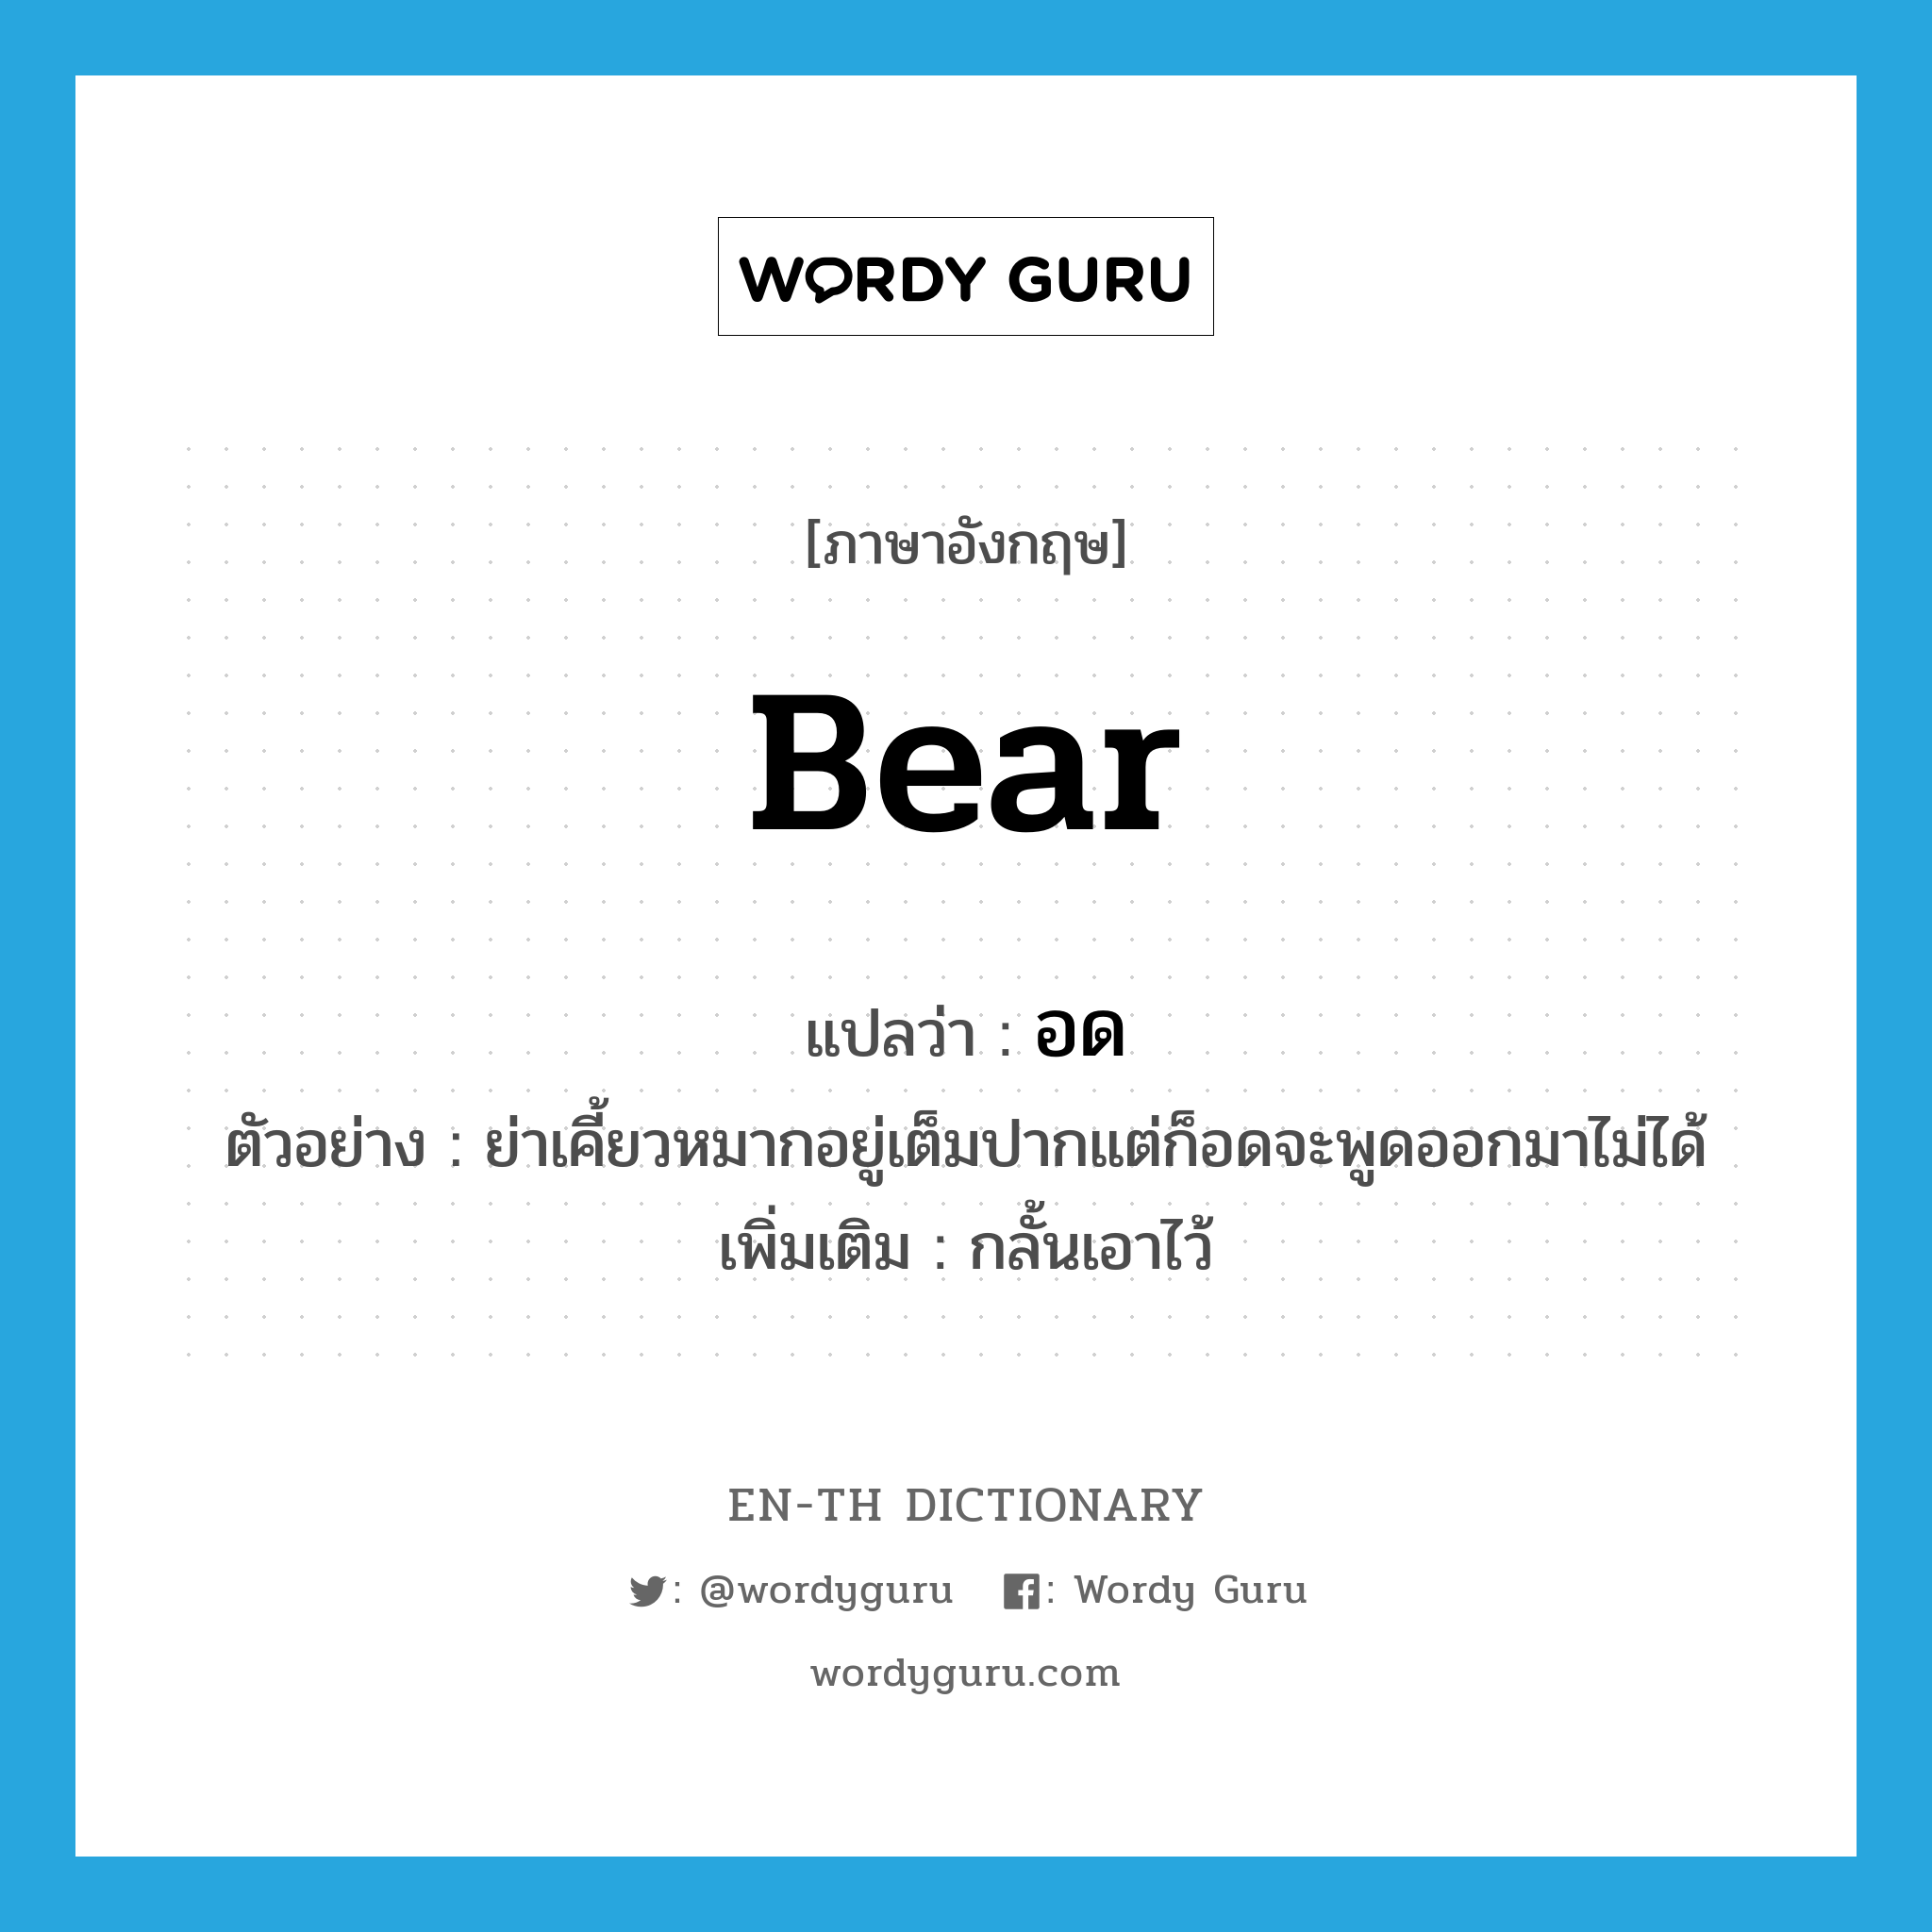 อด ภาษาอังกฤษ?, คำศัพท์ภาษาอังกฤษ อด แปลว่า bear ประเภท V ตัวอย่าง ย่าเคี้ยวหมากอยู่เต็มปากแต่ก็อดจะพูดออกมาไม่ได้ เพิ่มเติม กลั้นเอาไว้ หมวด V